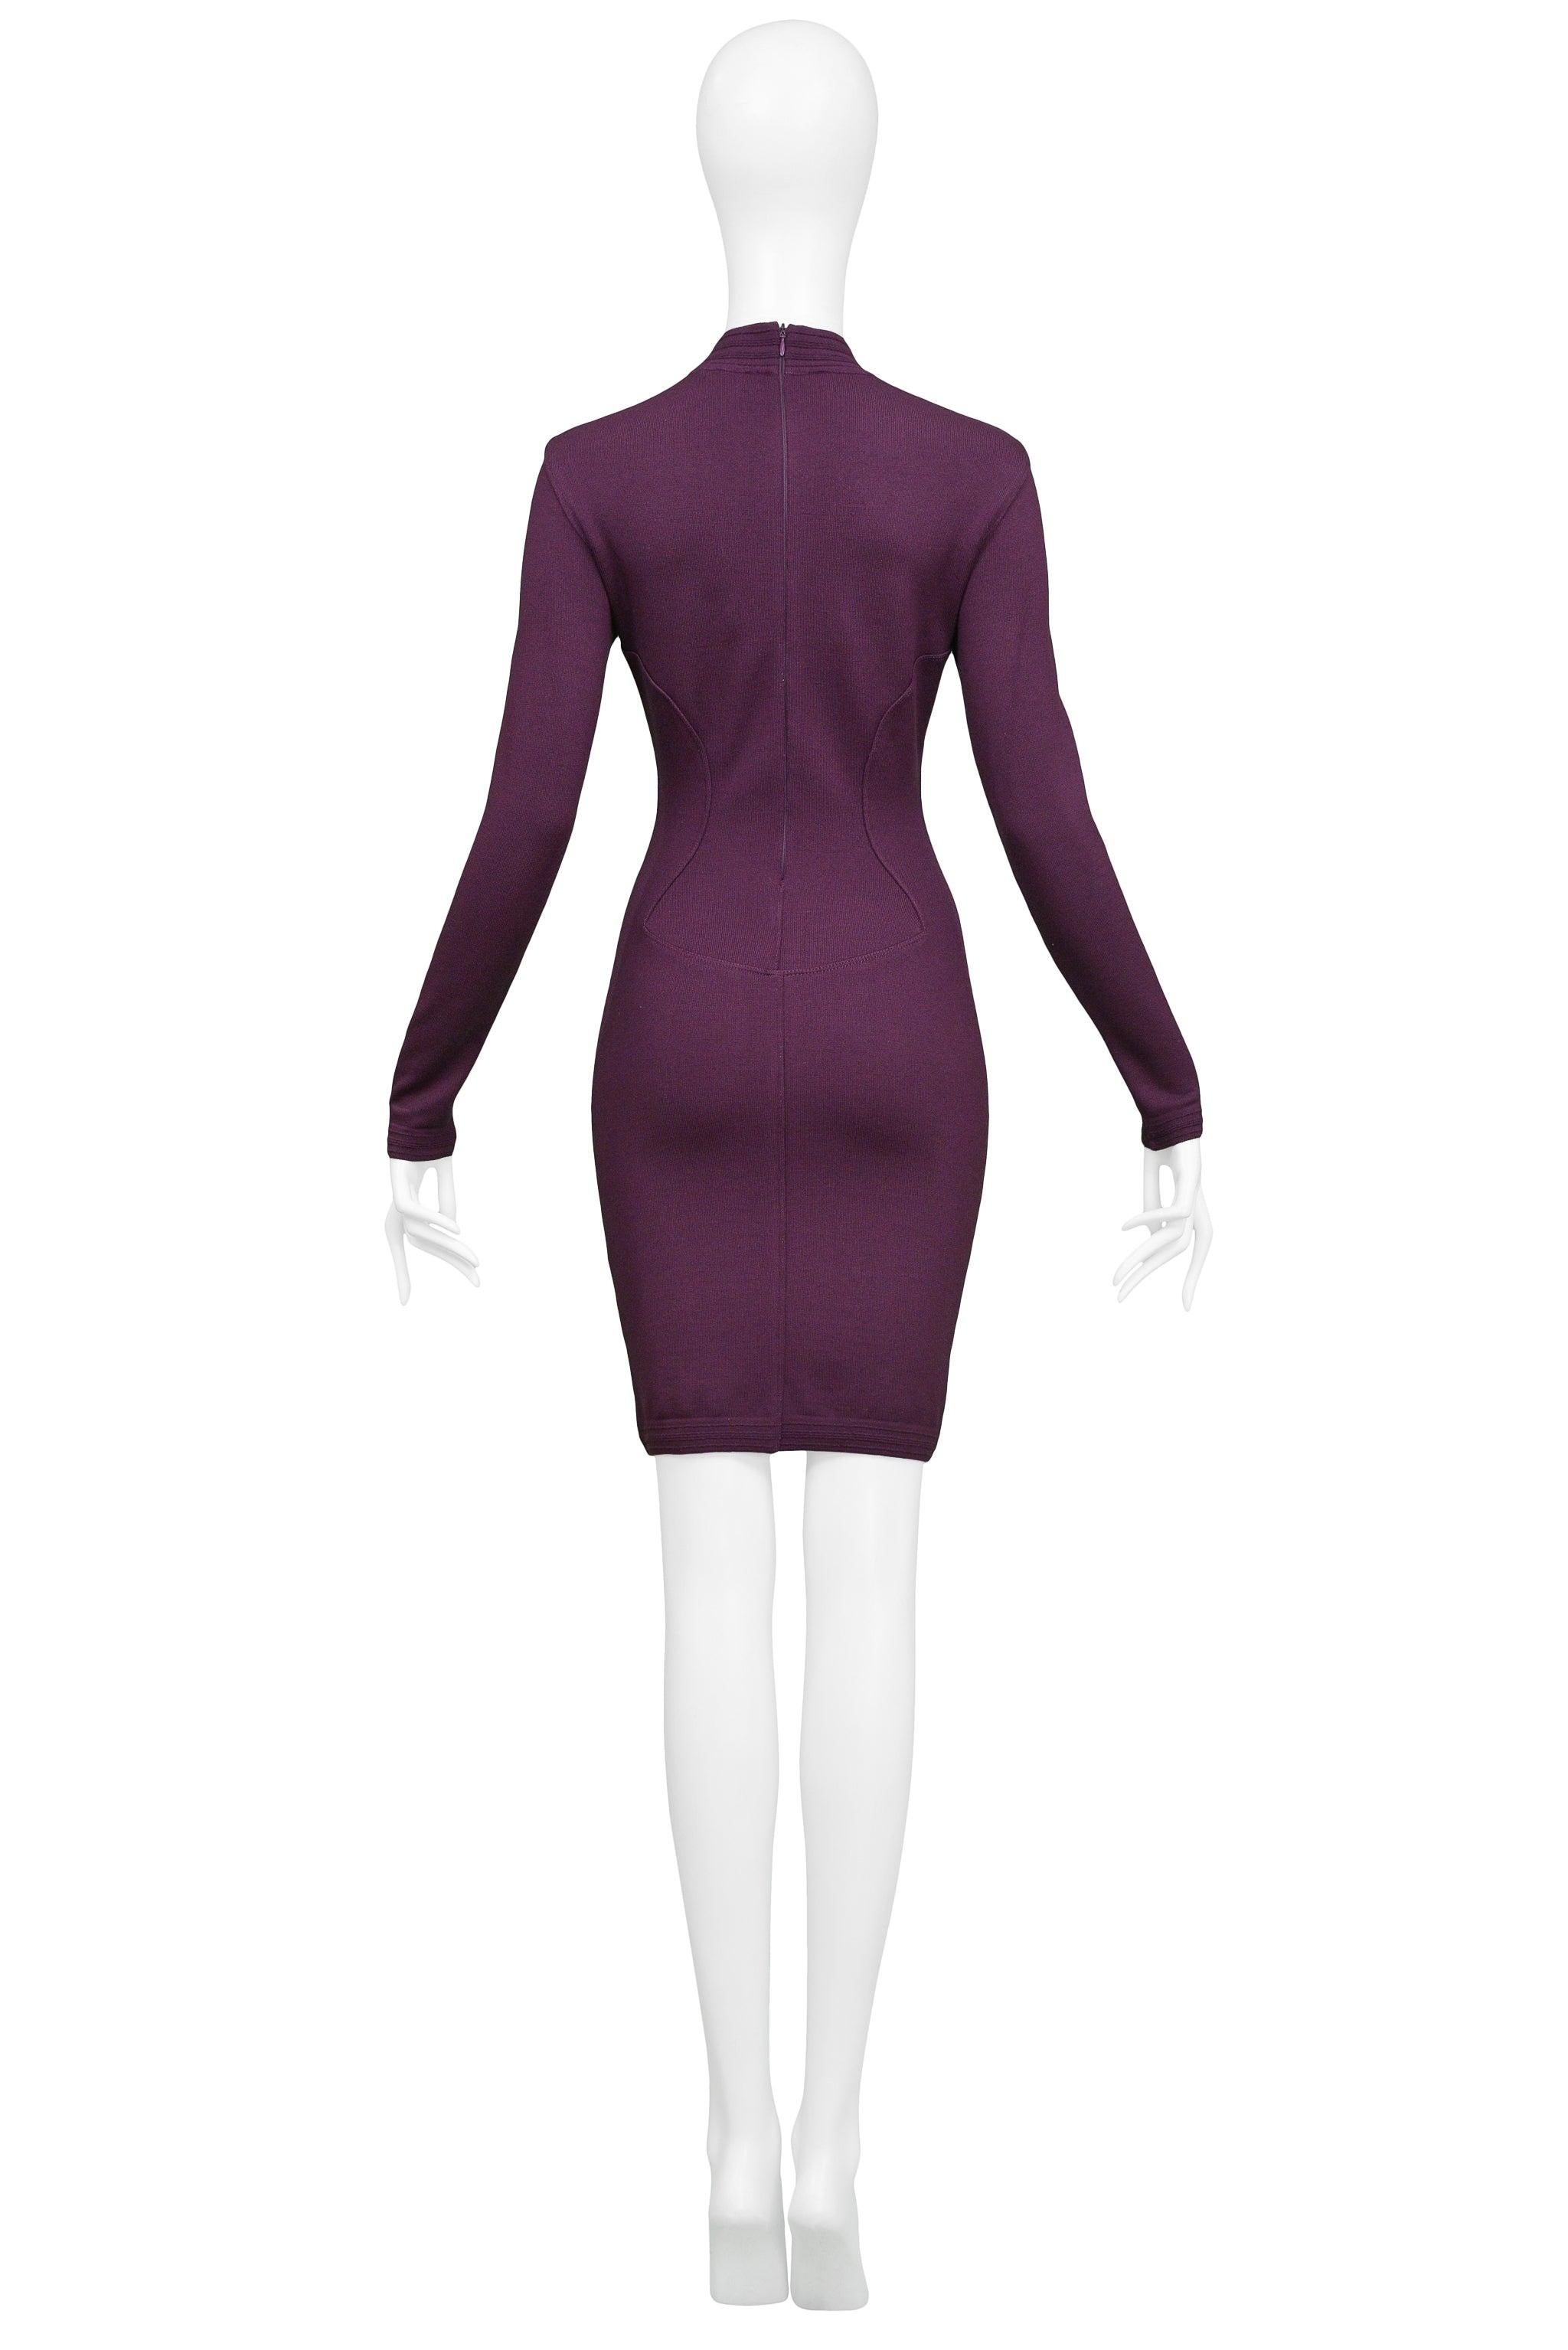 Azzedine Alaia Purple Long Sleeve High V Neck Dress 1991 2